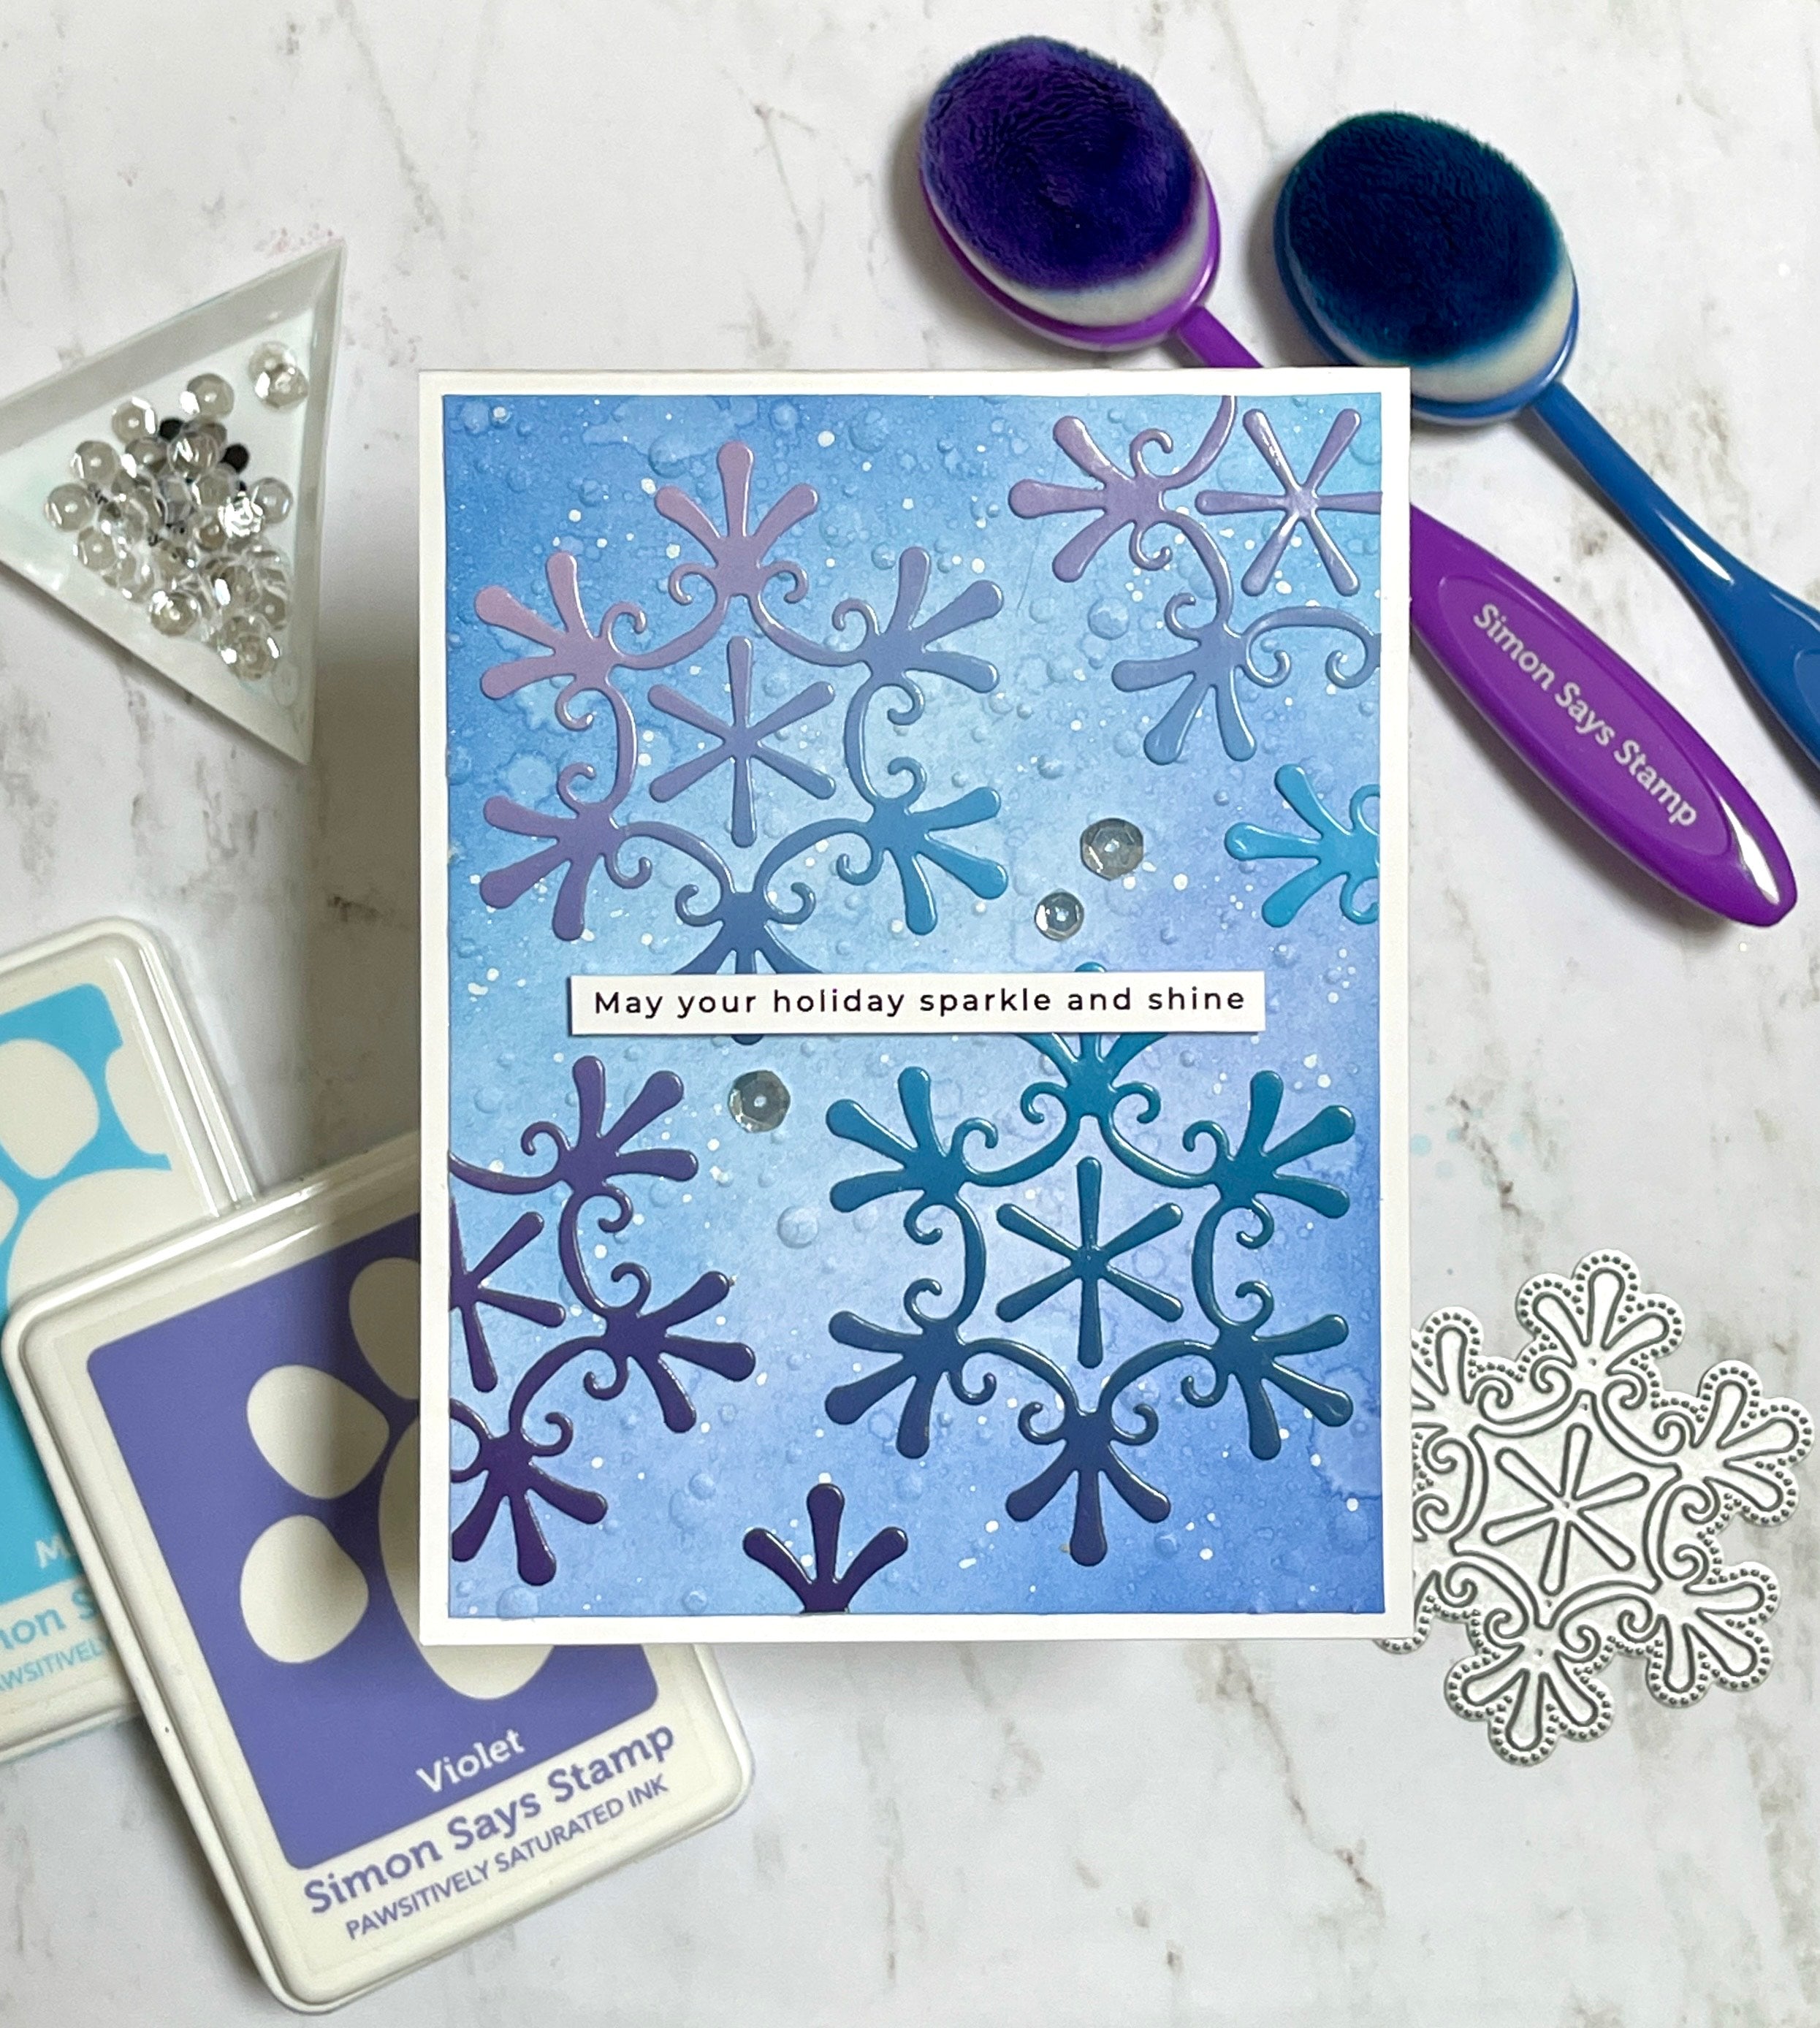 Altenew Sparkly Snowflake Stamp & Die Bundle